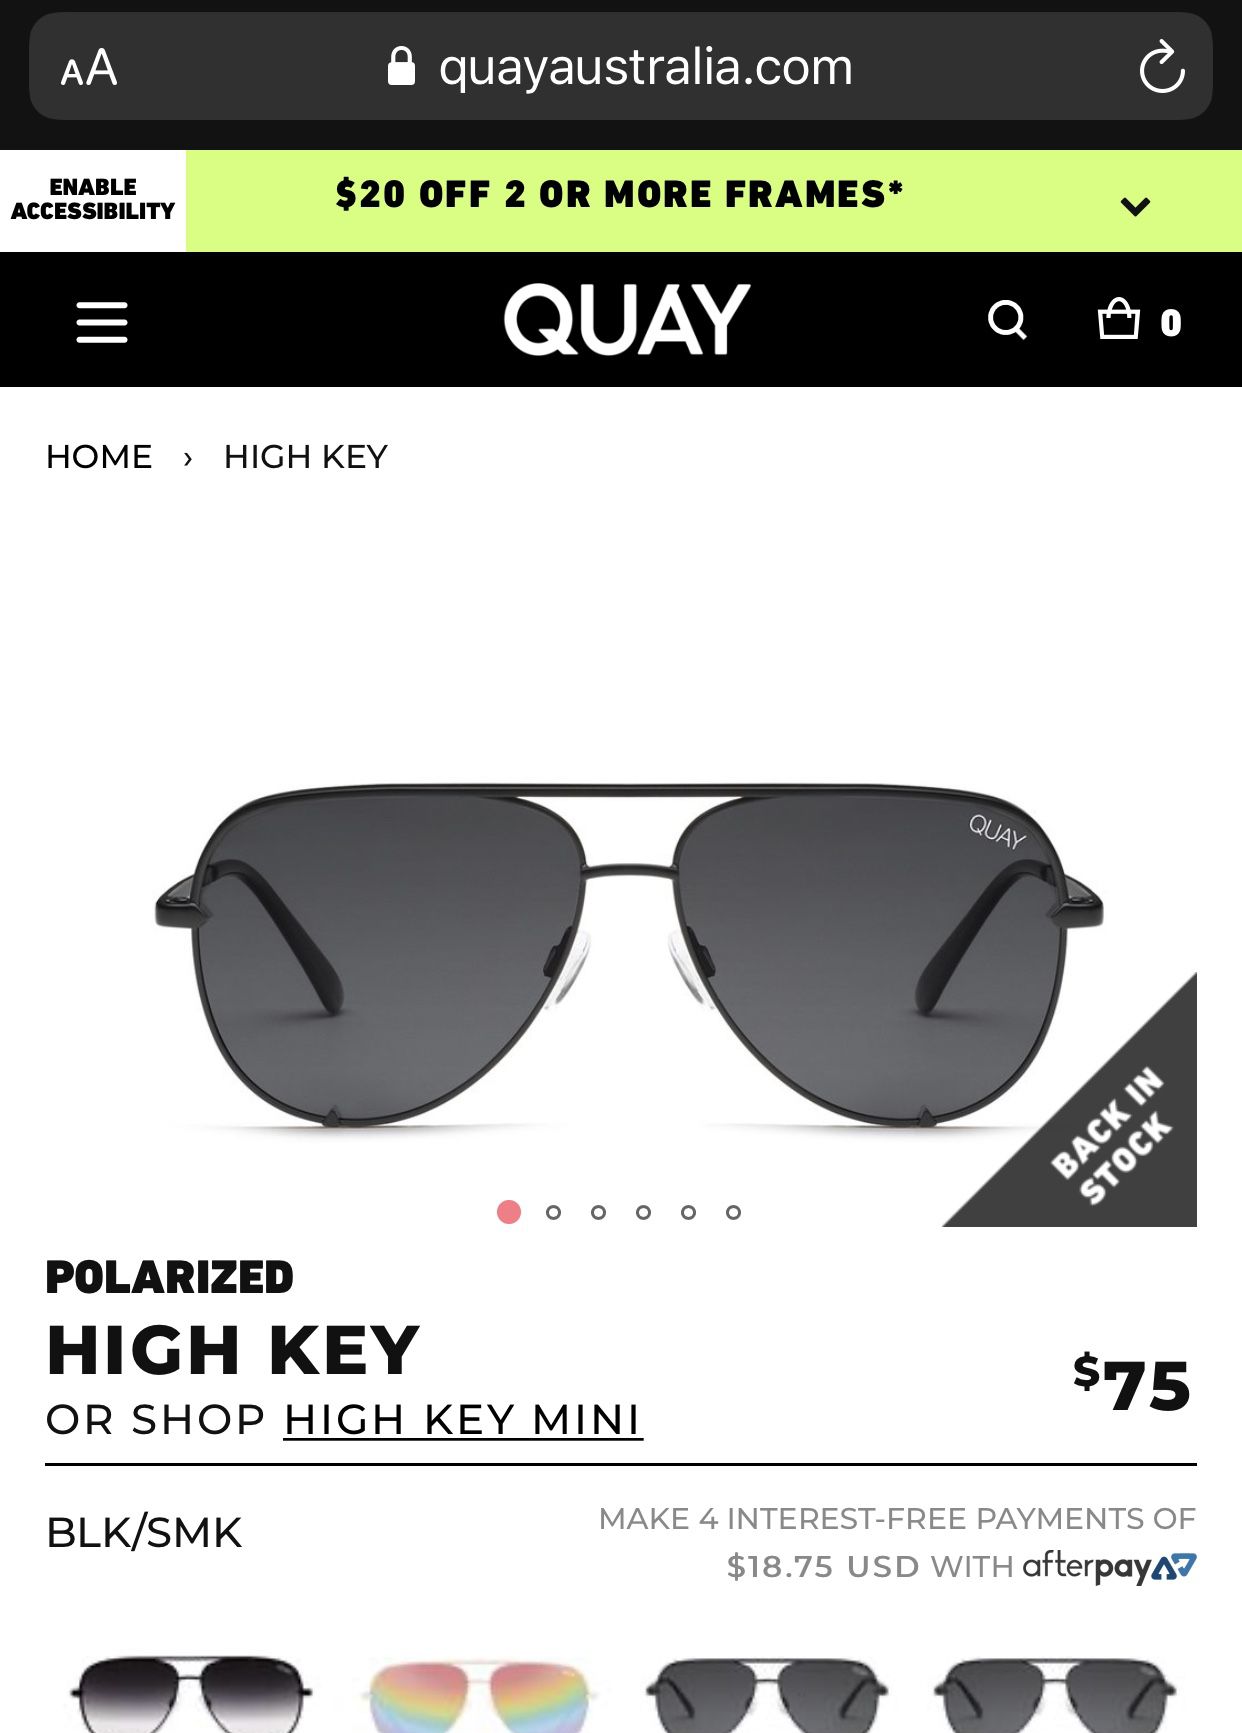 High key sunglasses